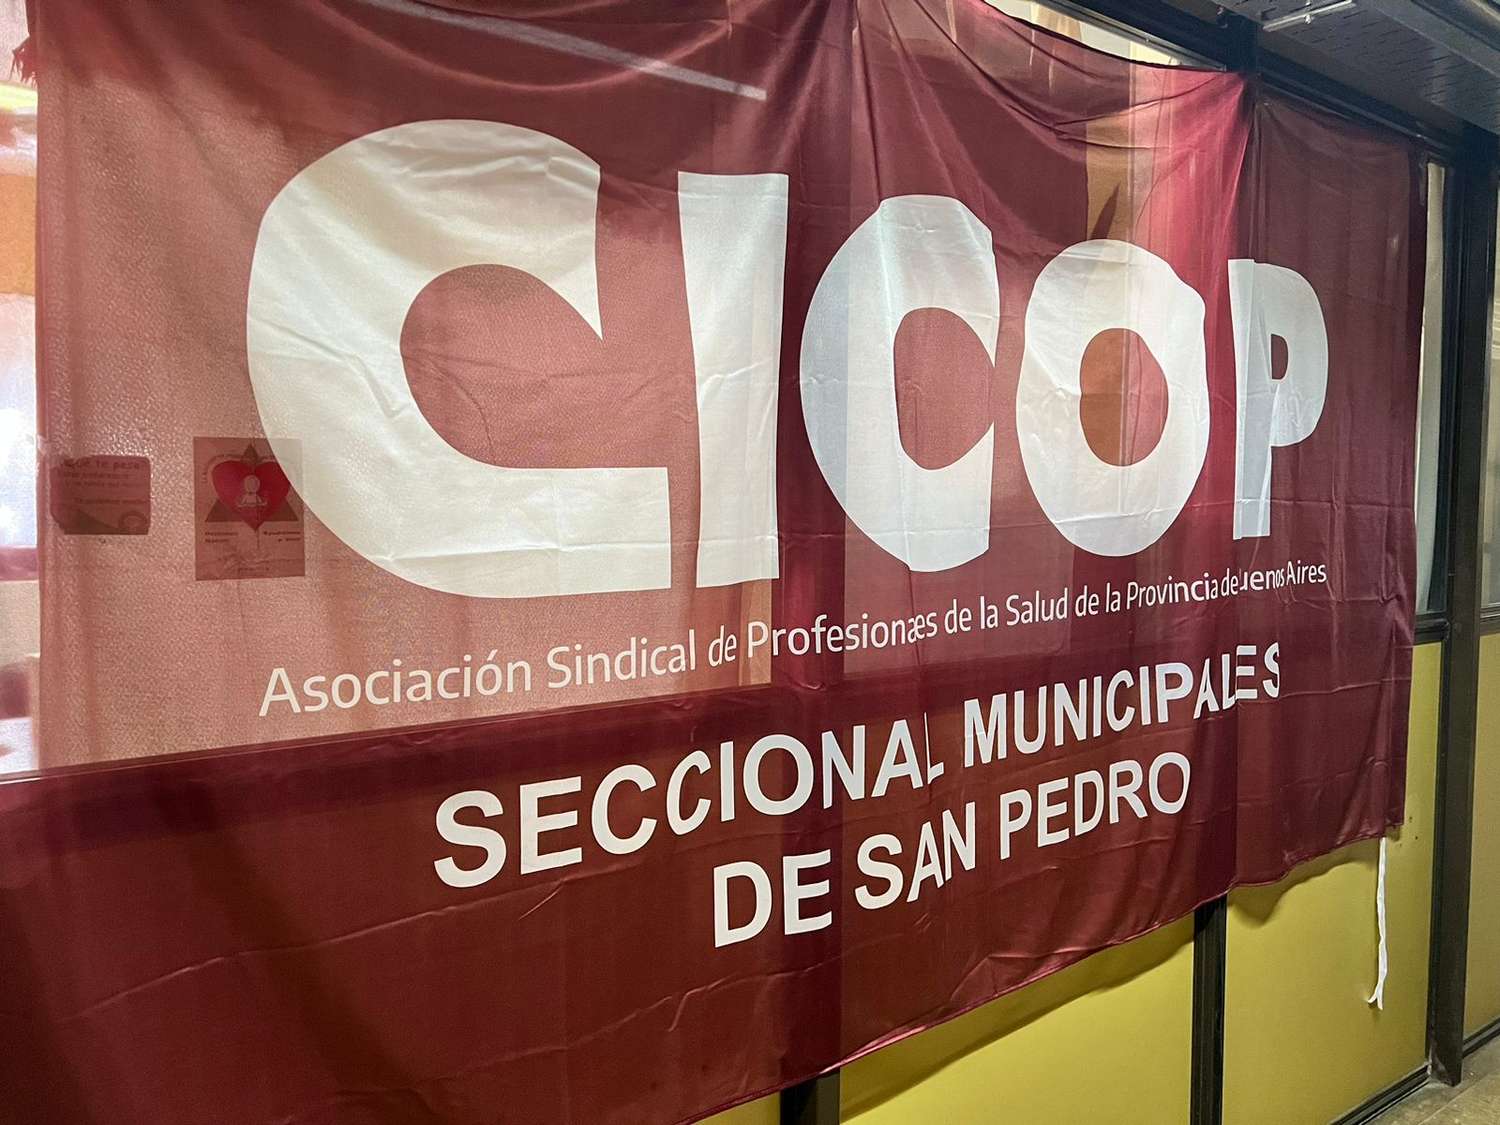 Cicop reclamó al Gobierno por postergar una audiencia "para solucionar problemas"